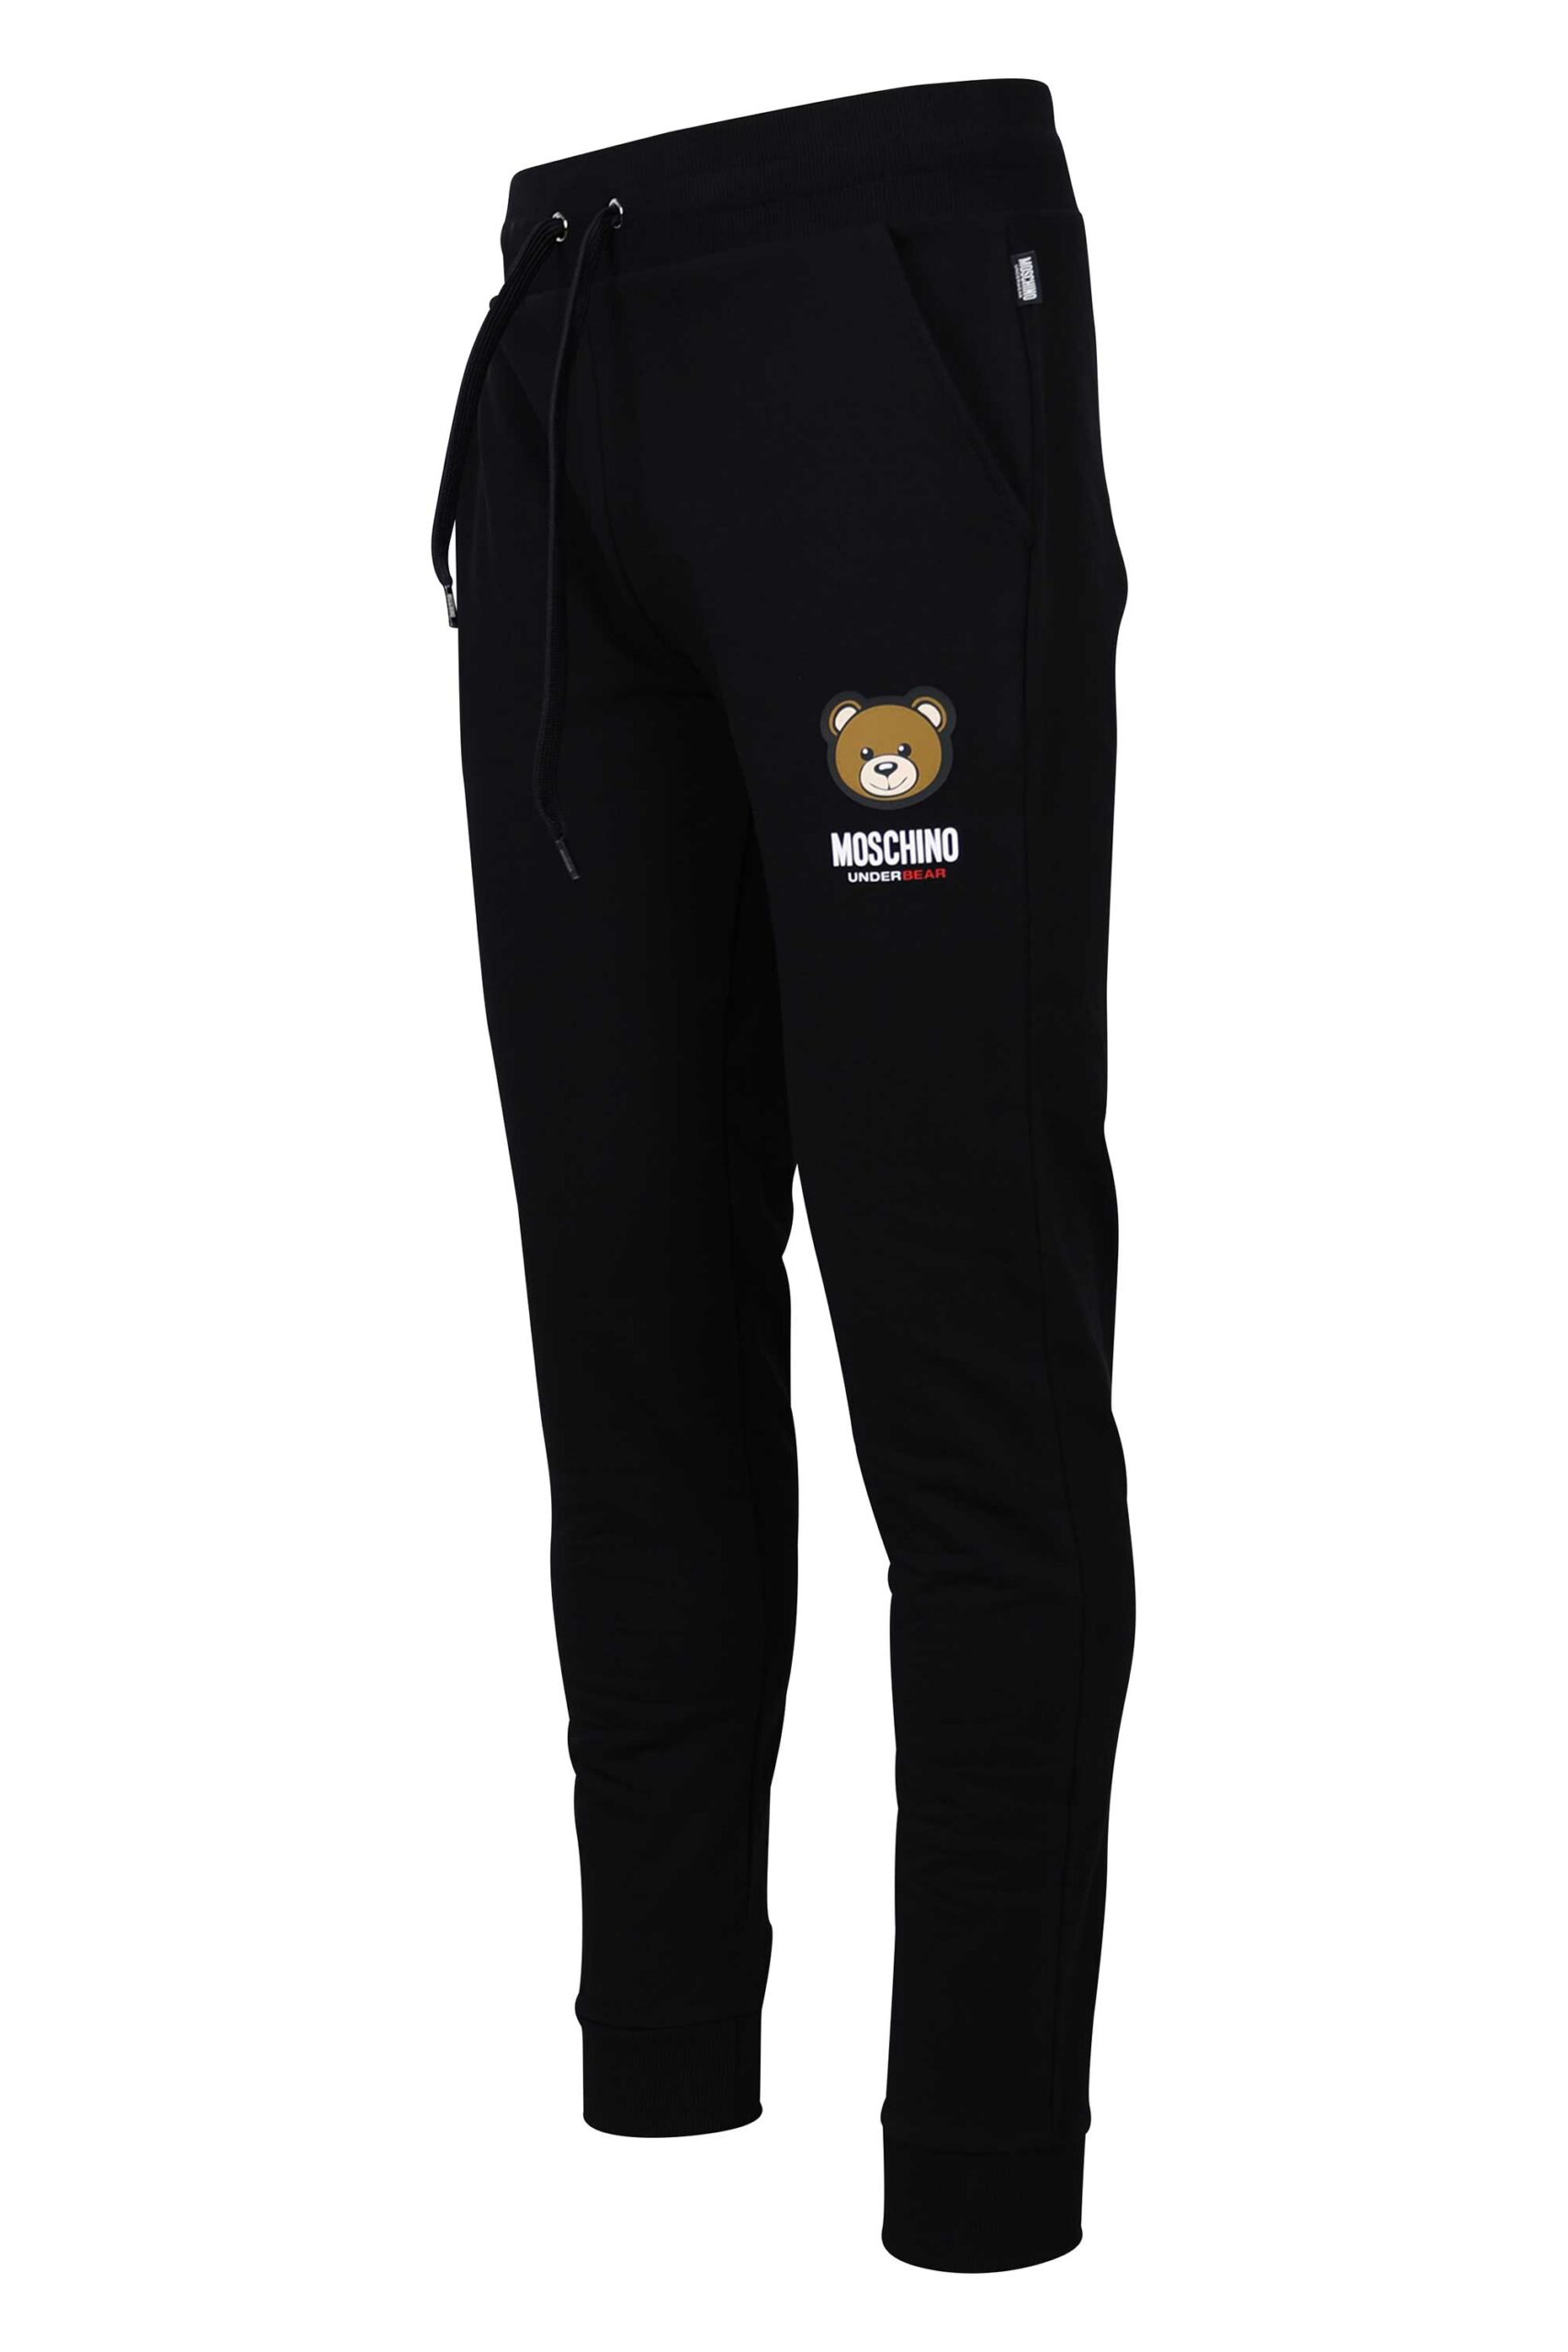 Moschino - Pantalón de chándal negro con logo oso underbear en parche - BLS  Fashion